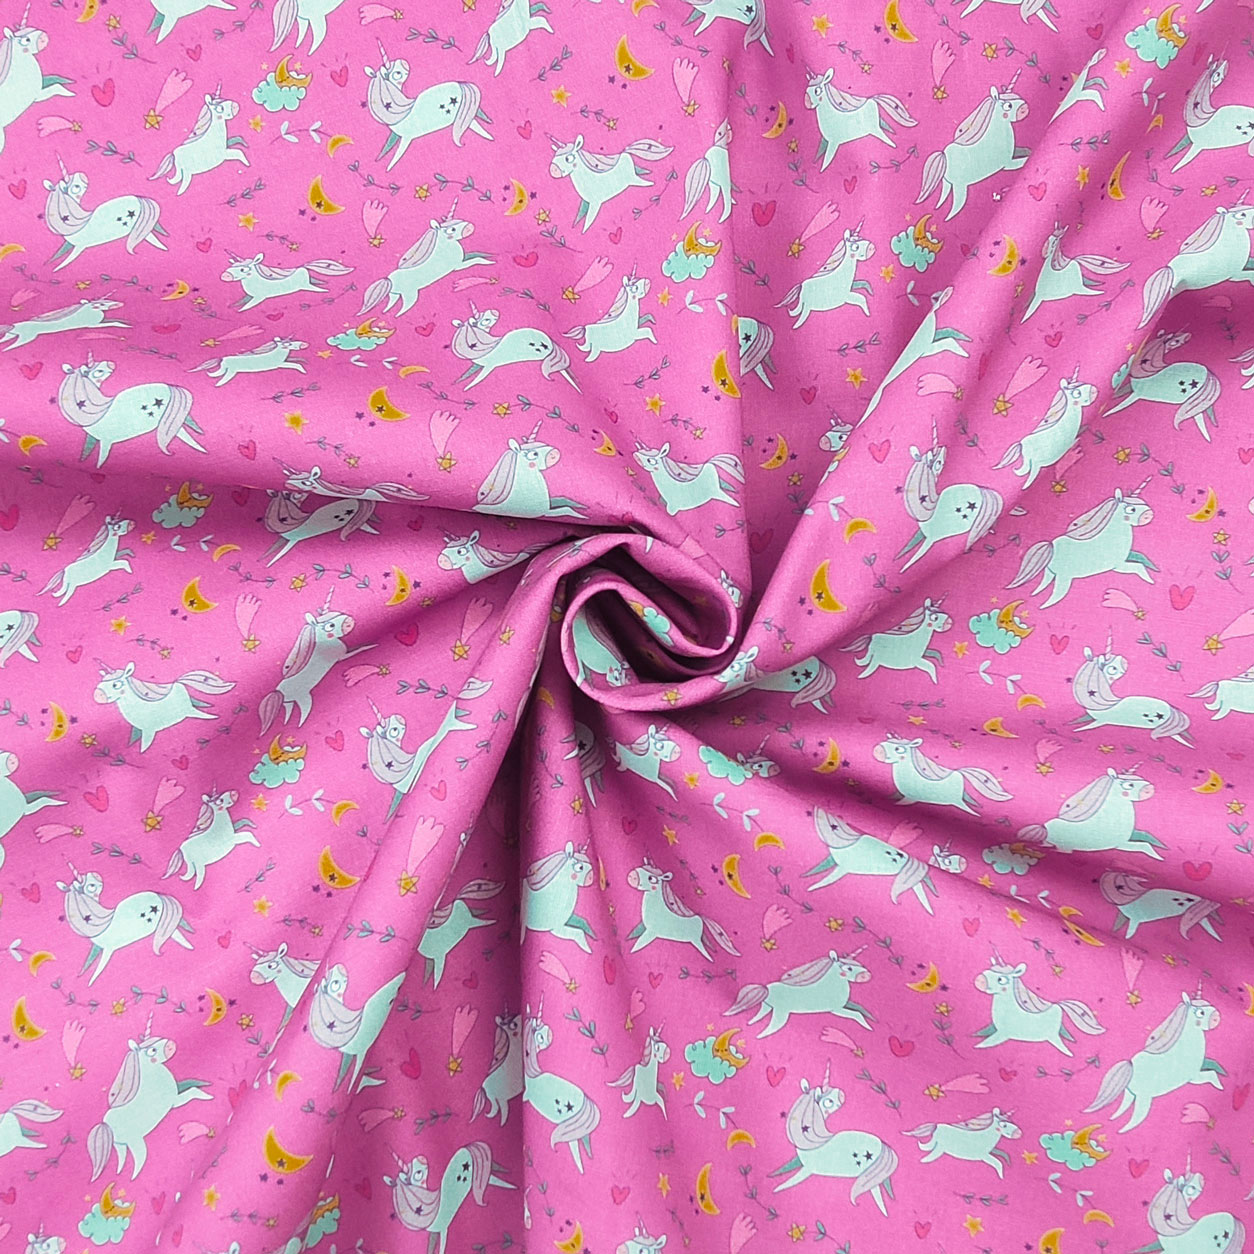 Tessuto-in-cotone-unicorni-e-nuvolette-sfondo-rosa-panini-tessuti